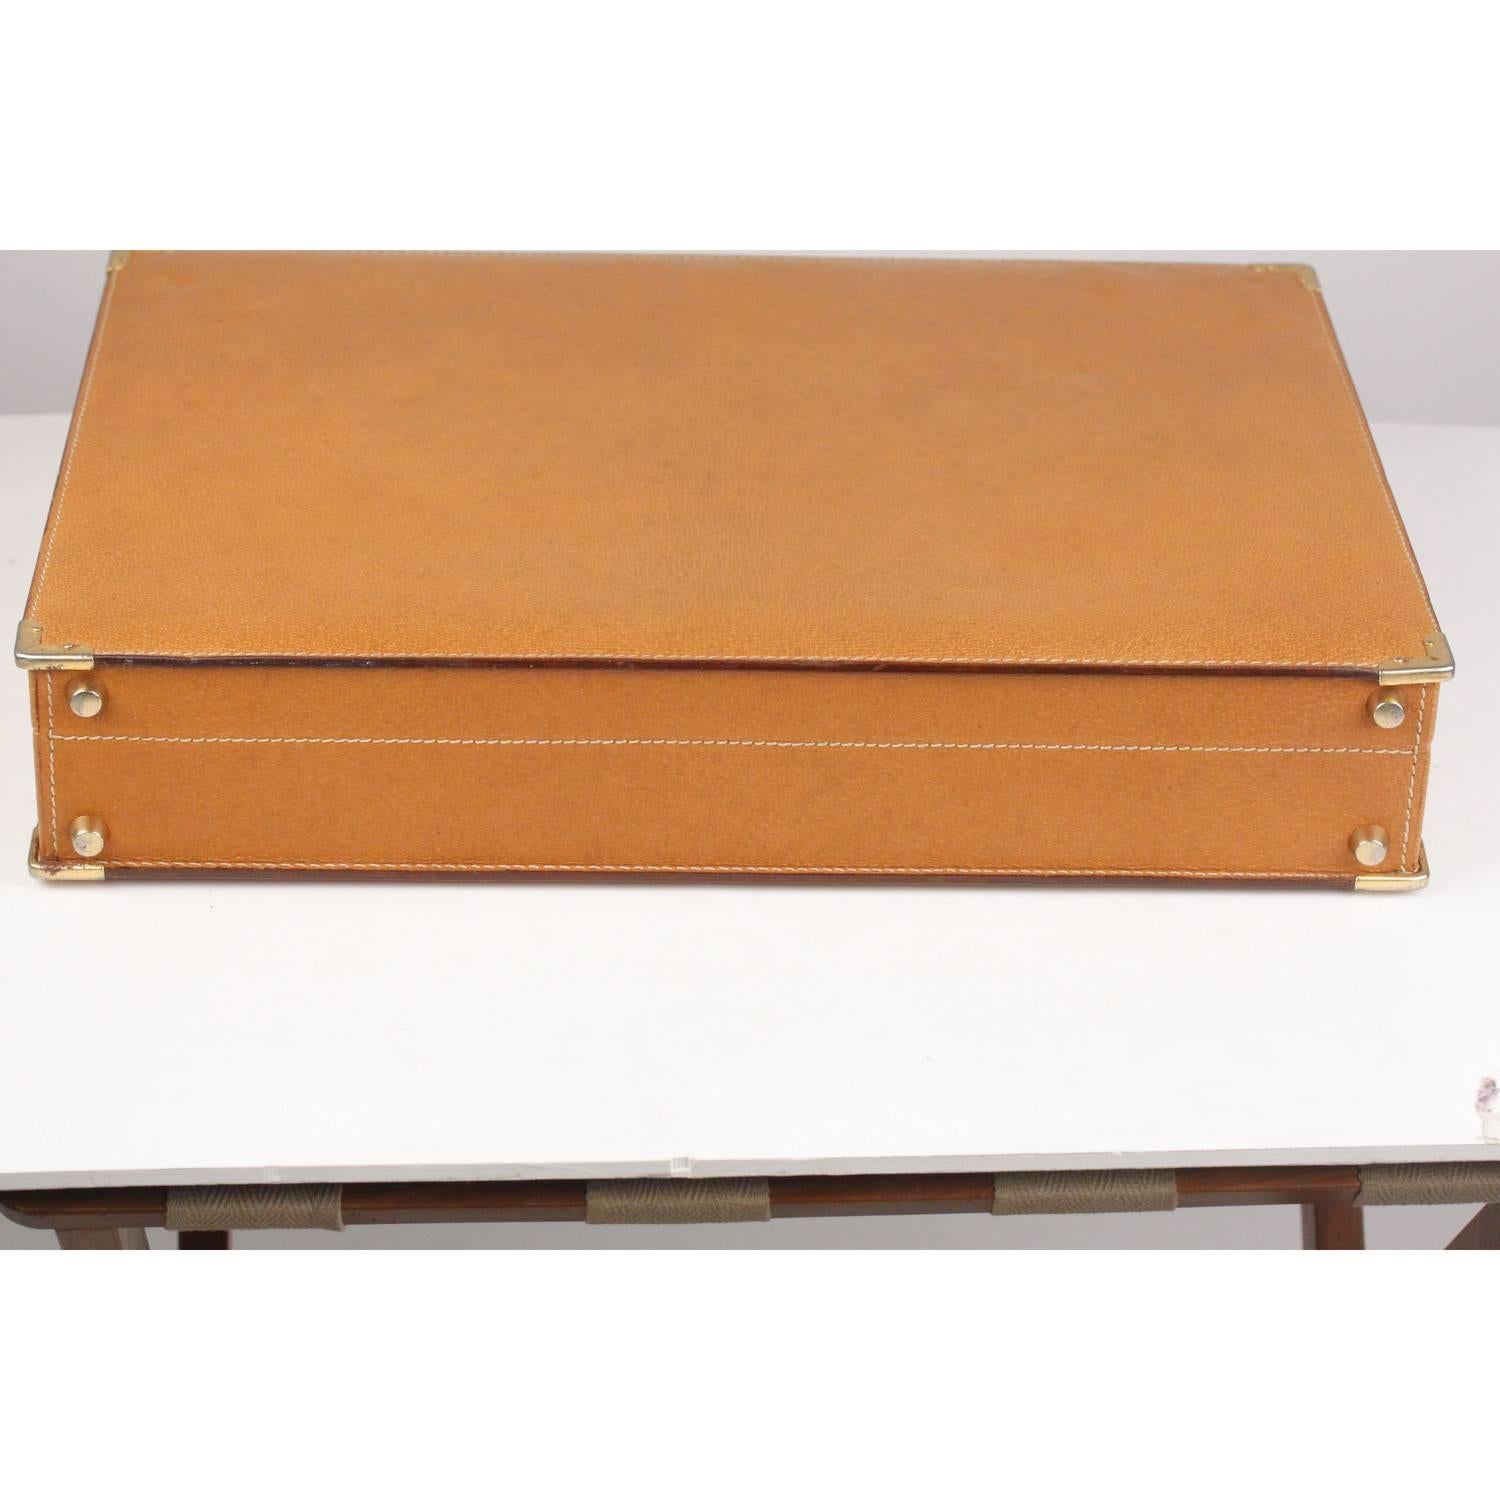 Orange GUCCI VINTAGE Tan Leather Hard Side Briefcase Work Bag